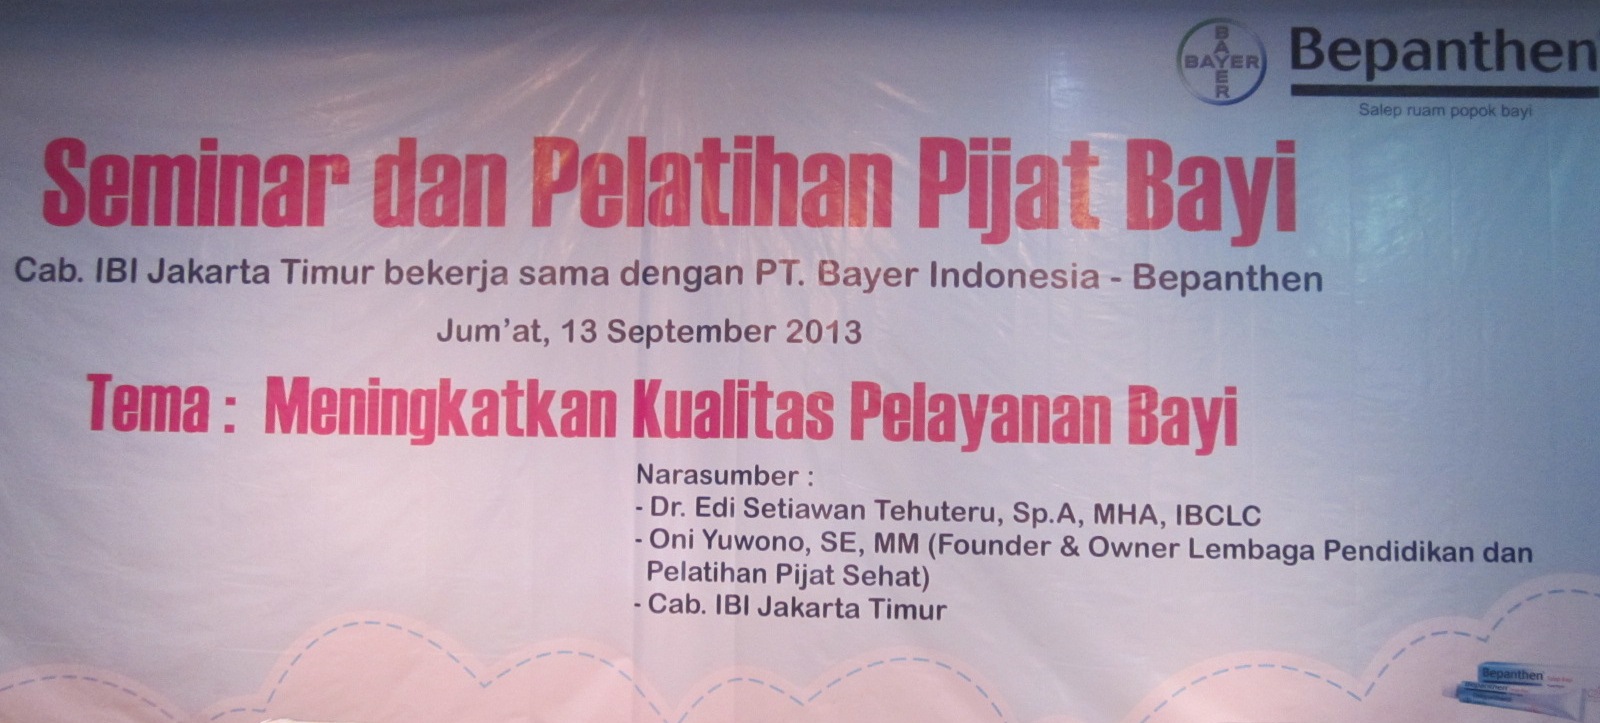 Seminar dan Pelatihan Pijat Bayi Cabang IBI Jakarta Timur Bekerjasama 